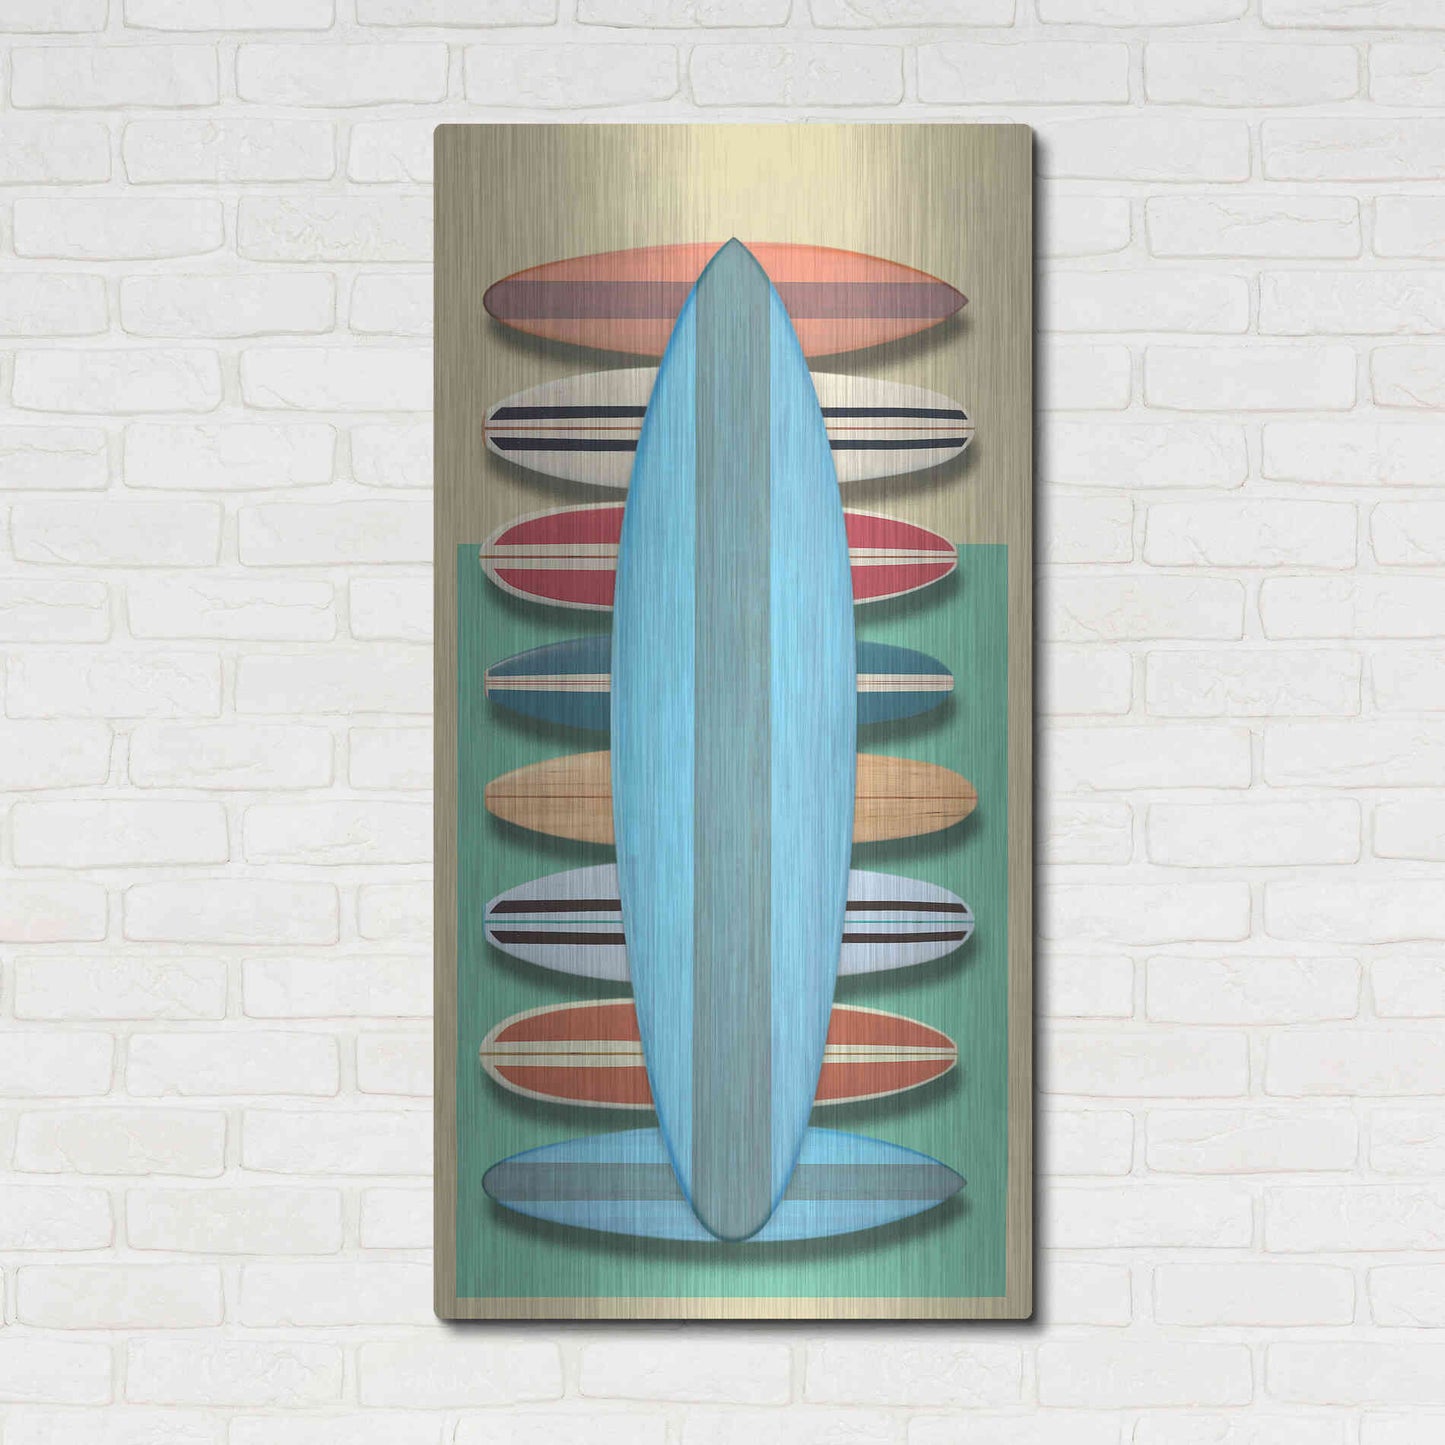 Luxe Metal Art 'Surfboards - Red' by Edward M. Fielding, Metal Wall Art,24x48